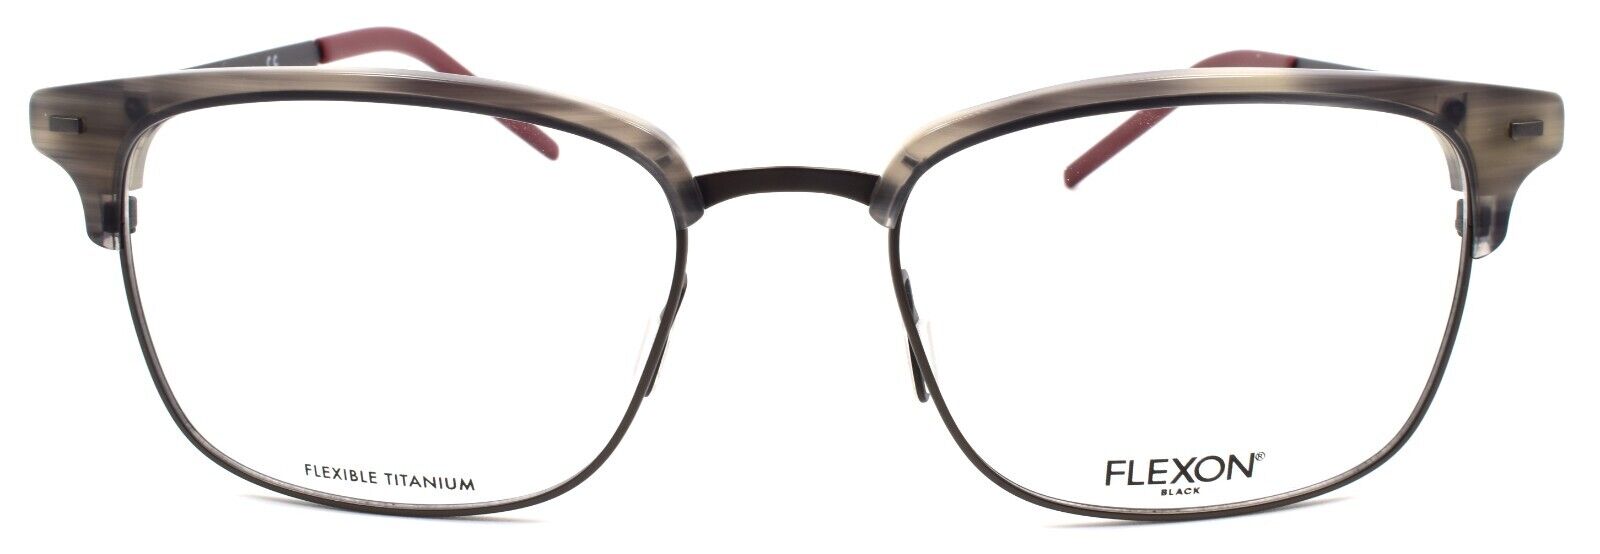 2-Flexon B2022 021 Men's Eyeglasses Frames Grey Horn 55-19-145 Flexible Titanium-886895450461-IKSpecs